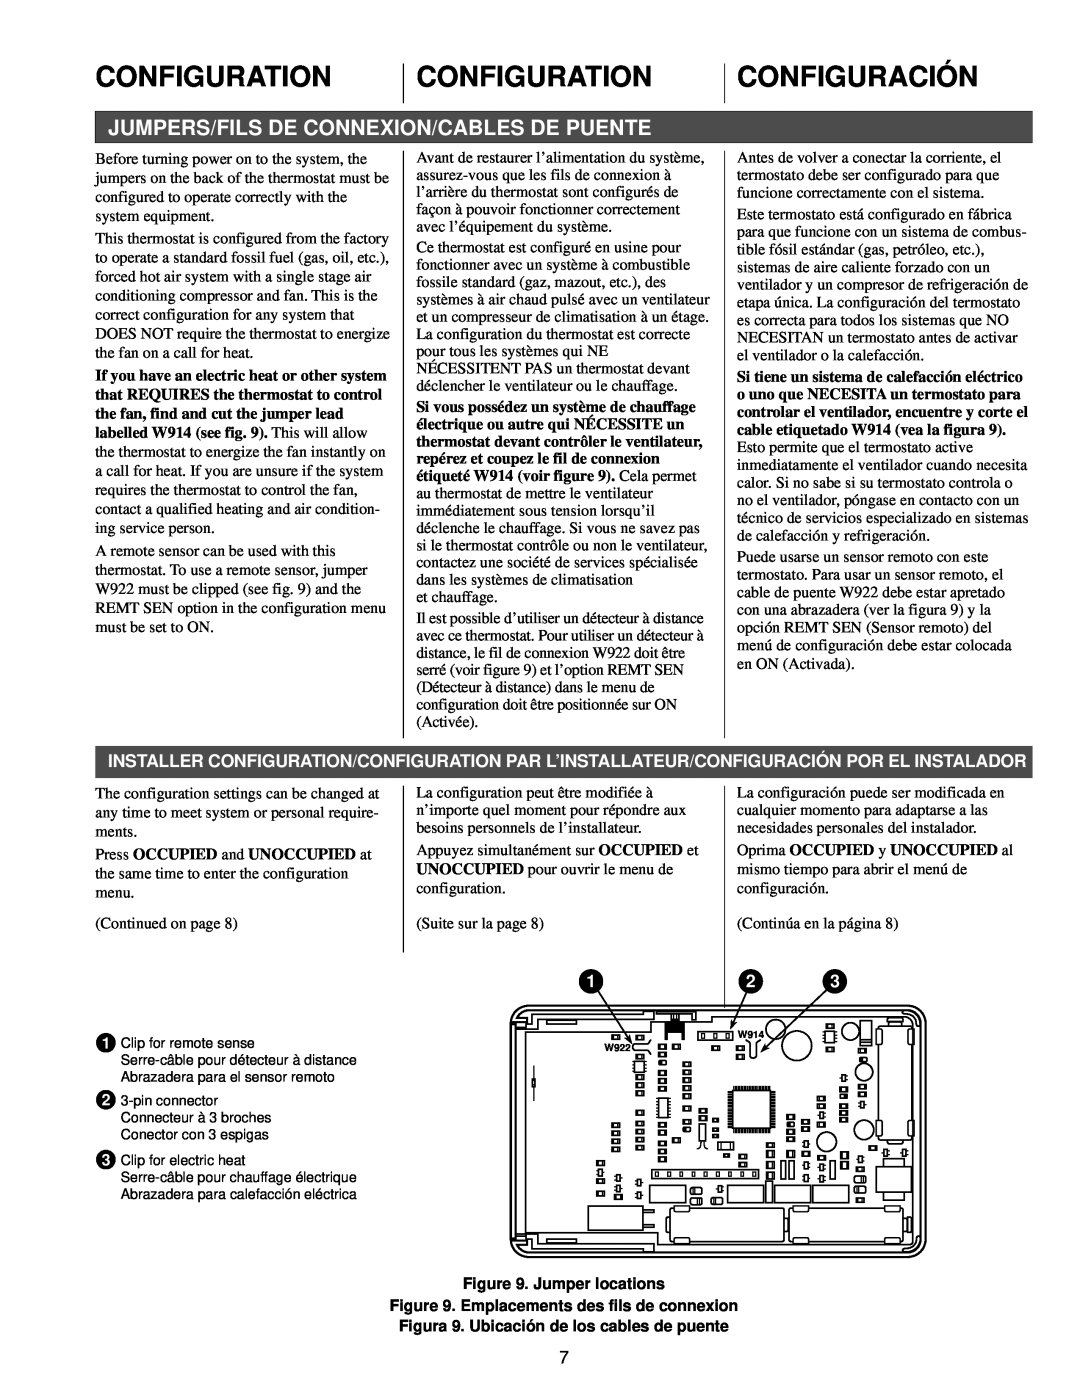 White Rodgers 1F96 specifications Configuration, Configuración, Jumpers/Fils De Connexion/Cables De Puente 